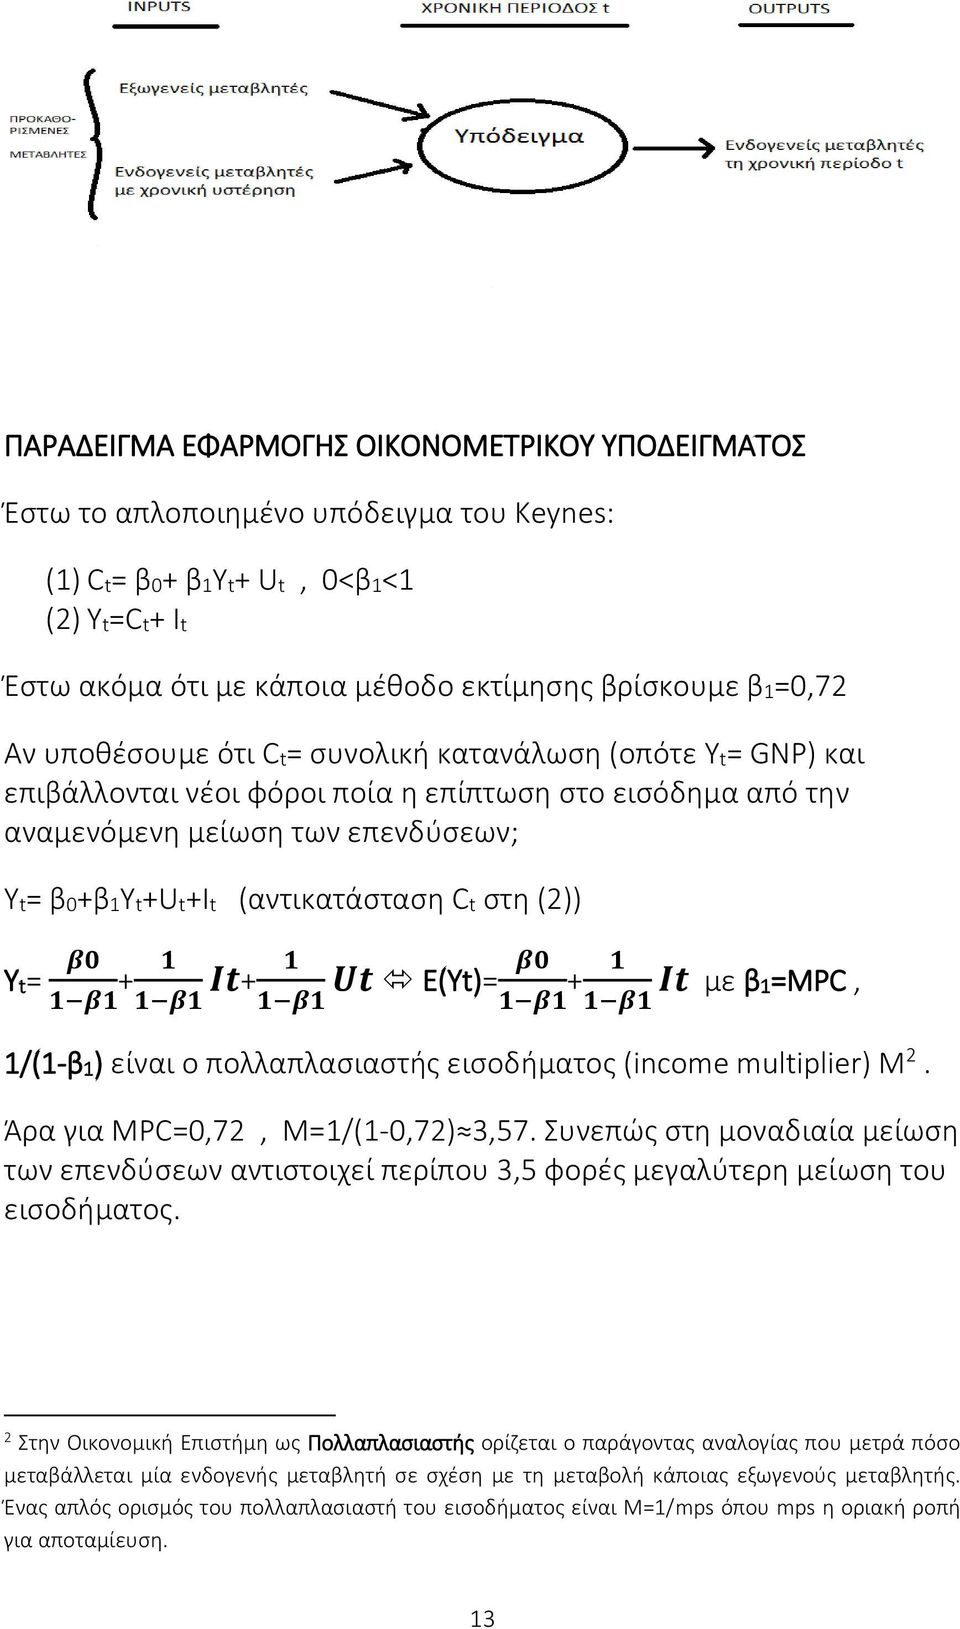 Yt= β0 1 β1 + 1 1 β1 Ιt+ 1 1 β1 Ut Ε(Υt)= β0 1 β1 + 1 1 β1 It με β1=μpc, 1/(1-β1) είναι ο πολλαπλασιαστής εισοδήματος (income multiplier) Μ 2. Άρα για MPC=0,72, Μ=1/(1-0,72) 3,57.